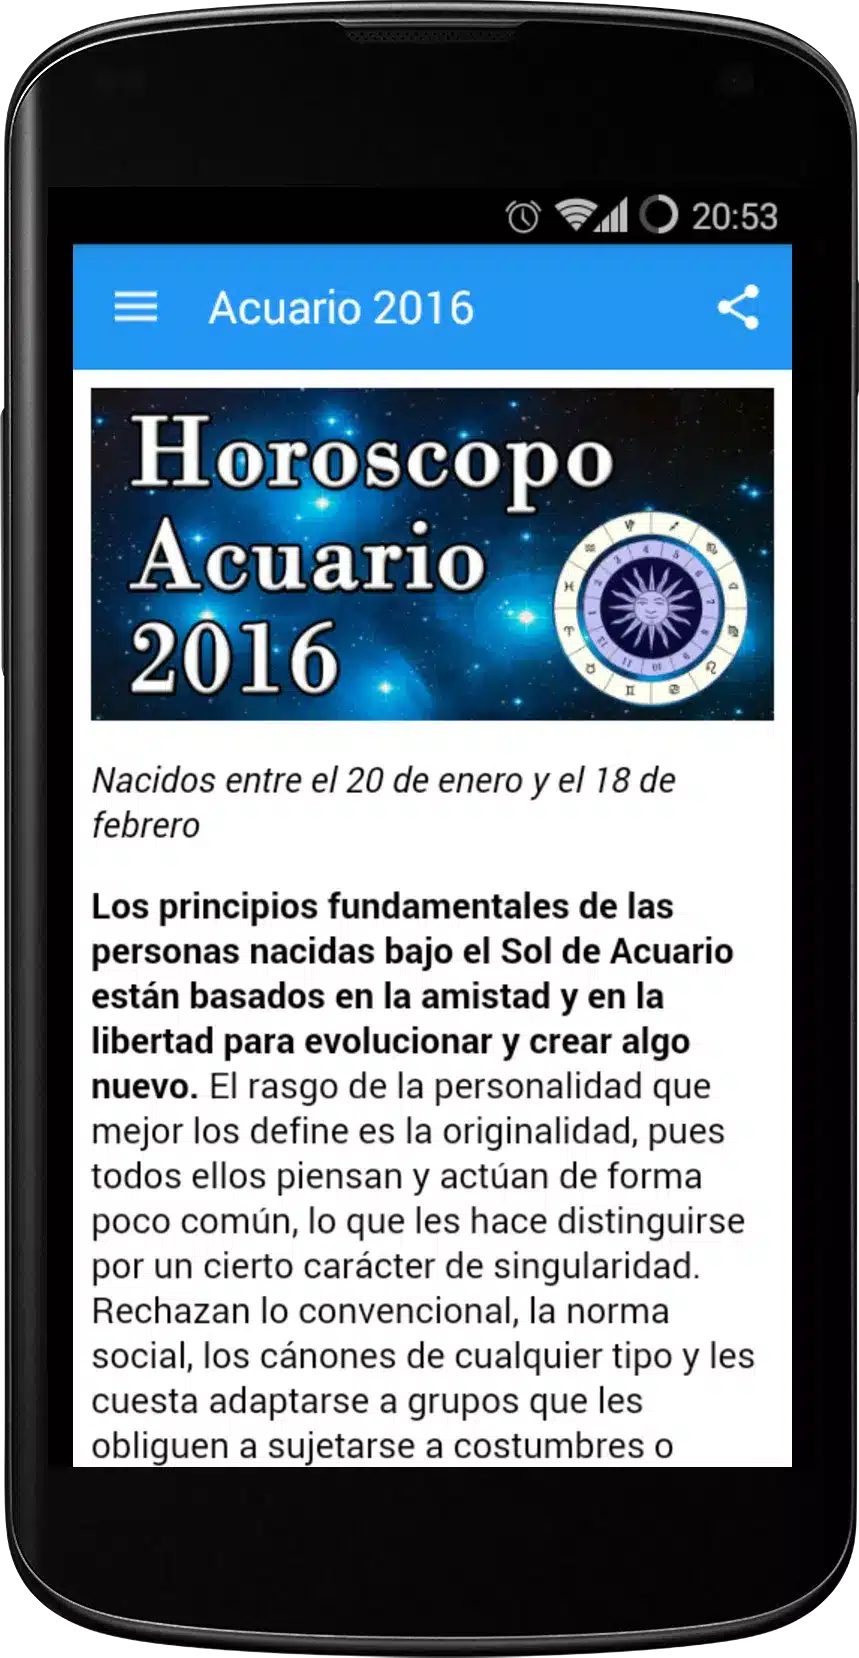 Horoscopo Acuario 2016 Image 3